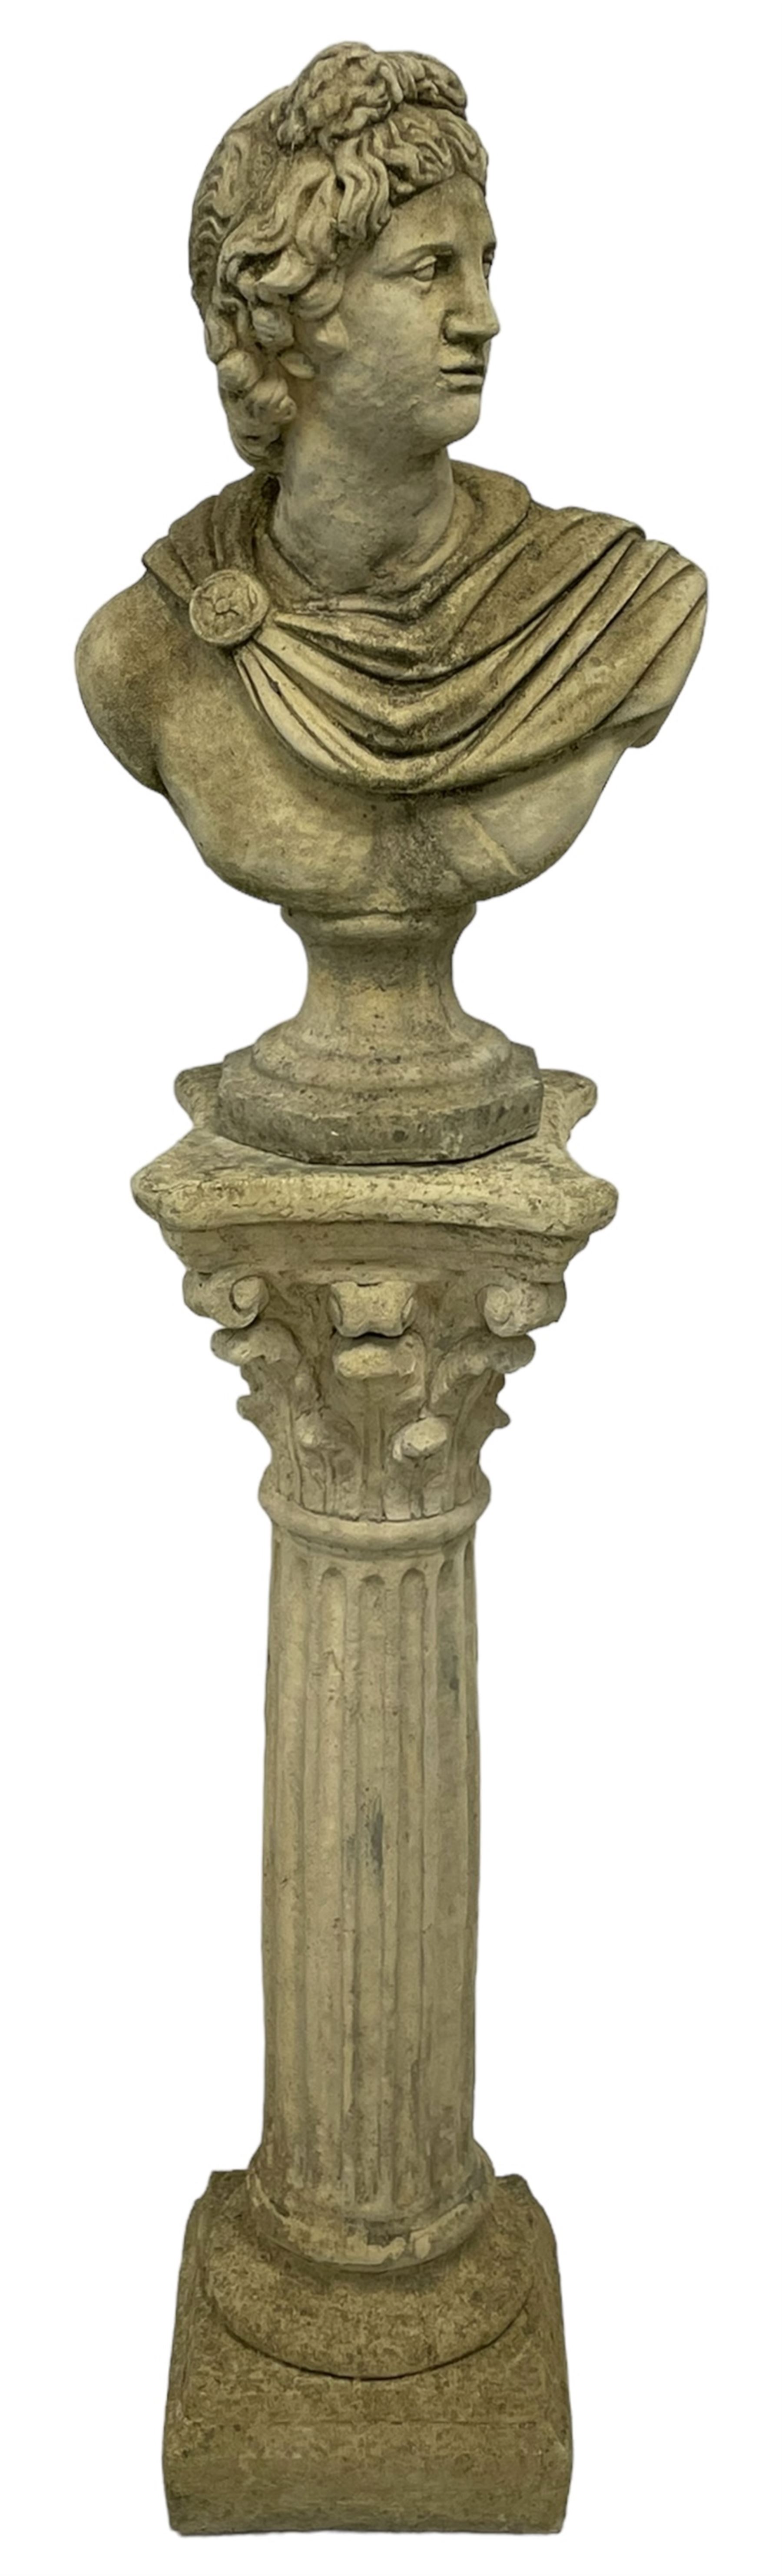 Composite stone classical design bust of Apollo Belvedere